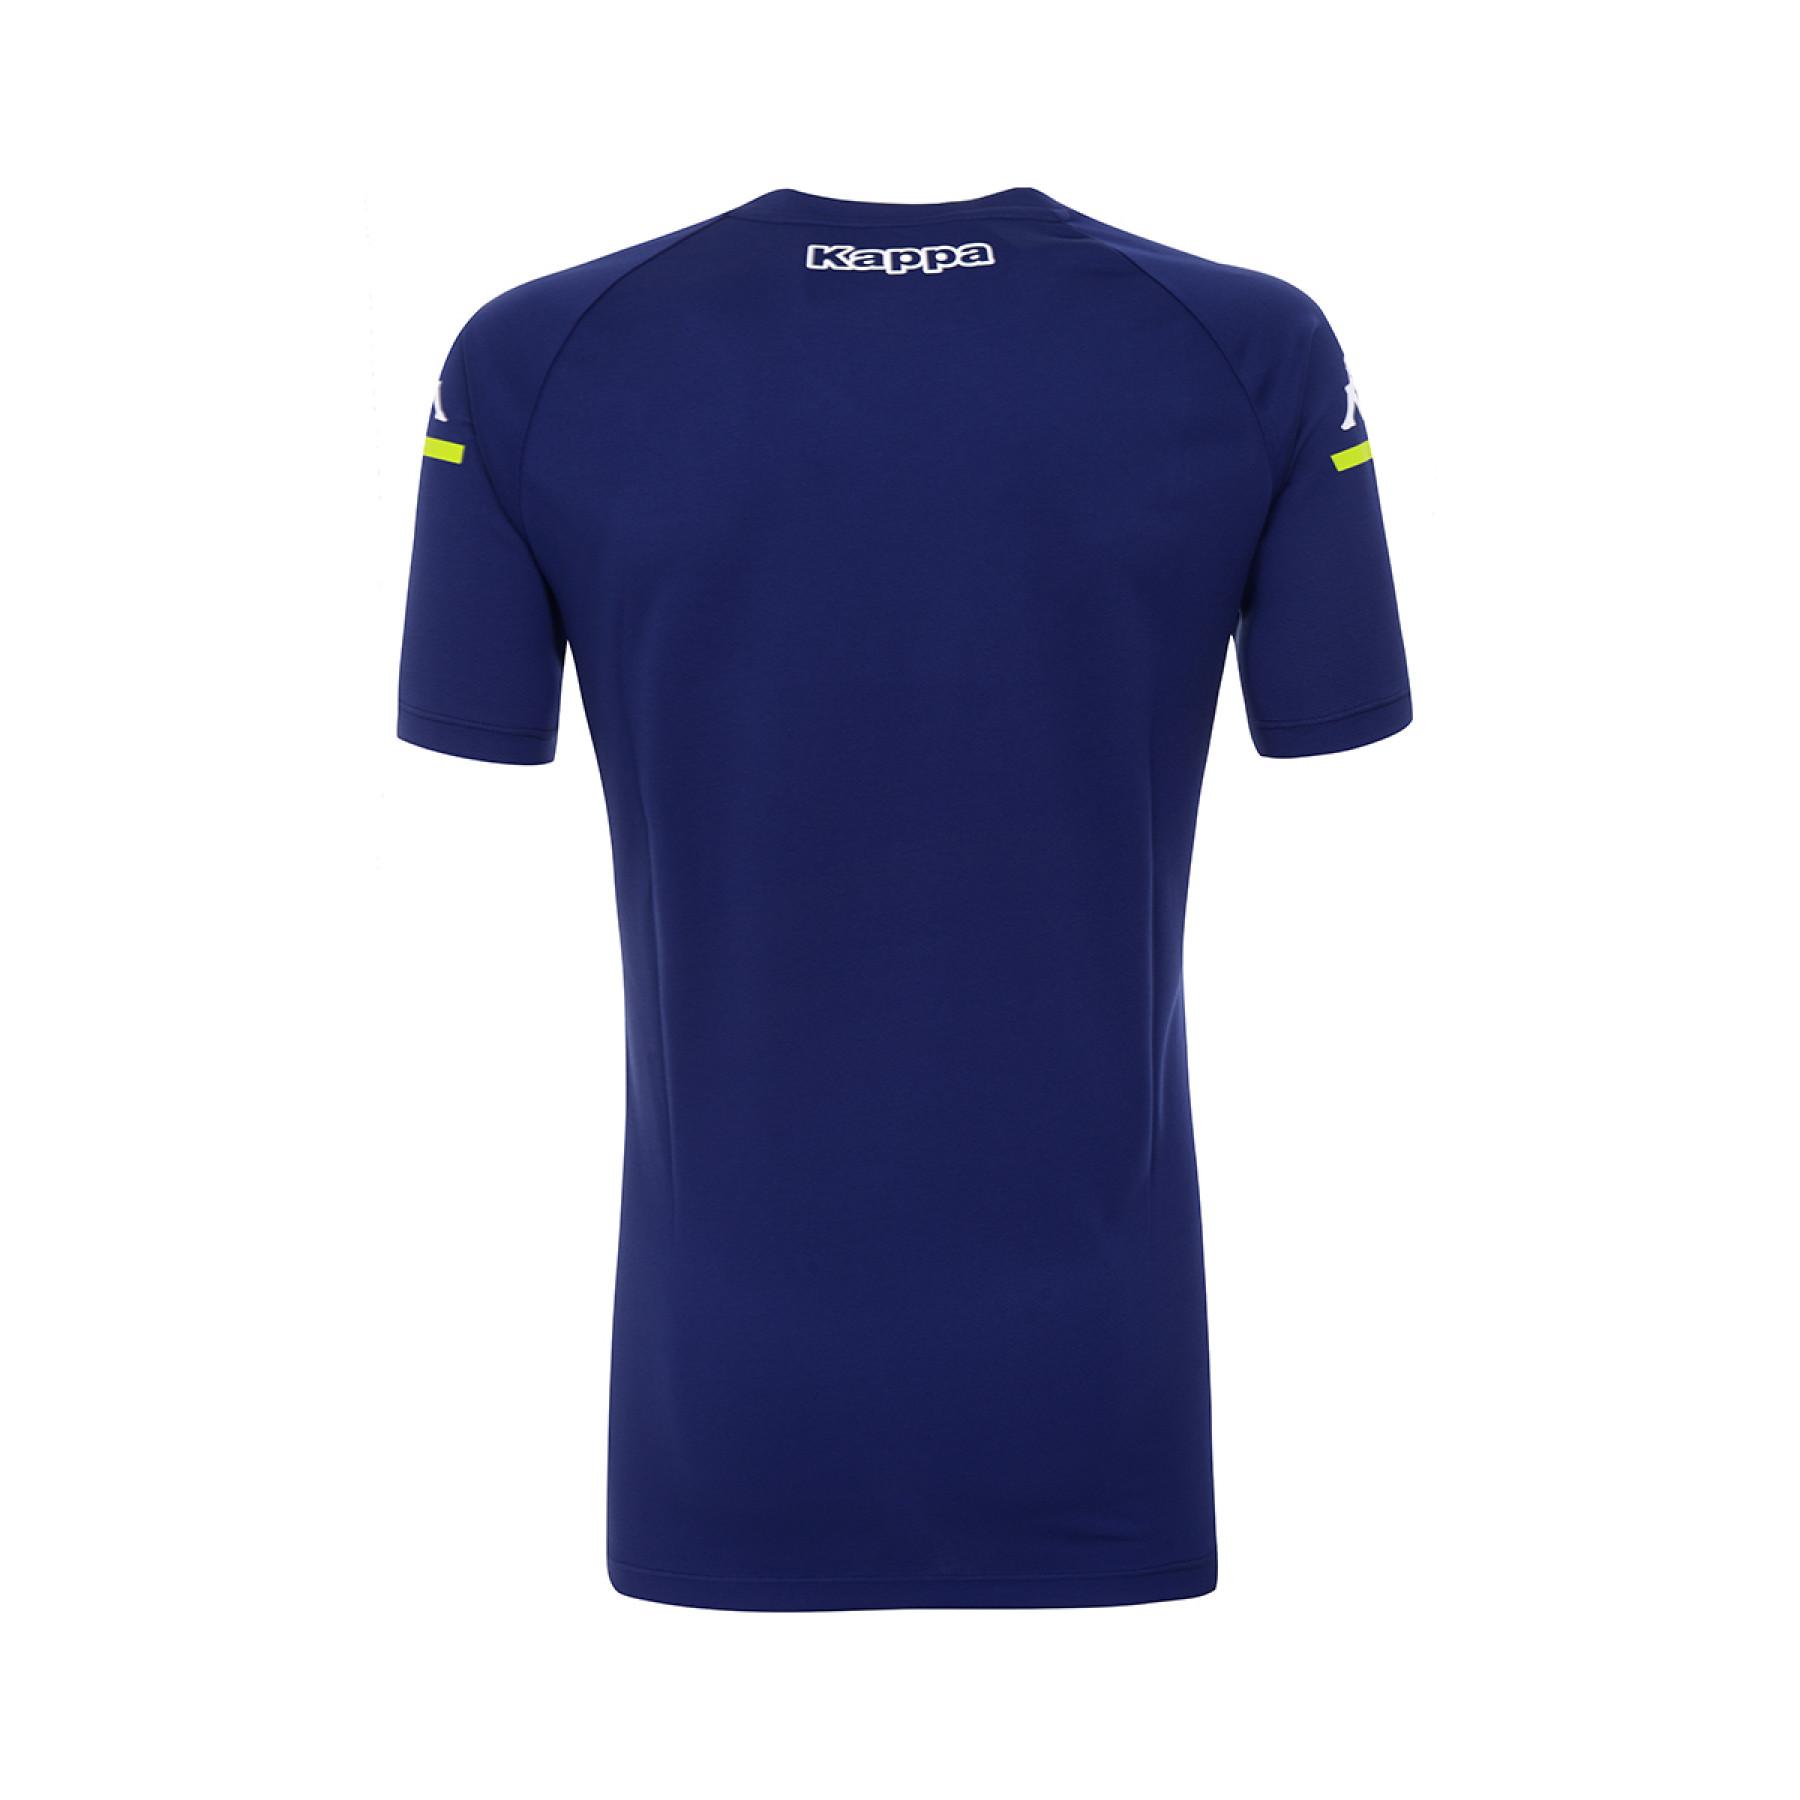 Koszulka dziecięca Aston Villa FC 2020/21 aboupres pro 4